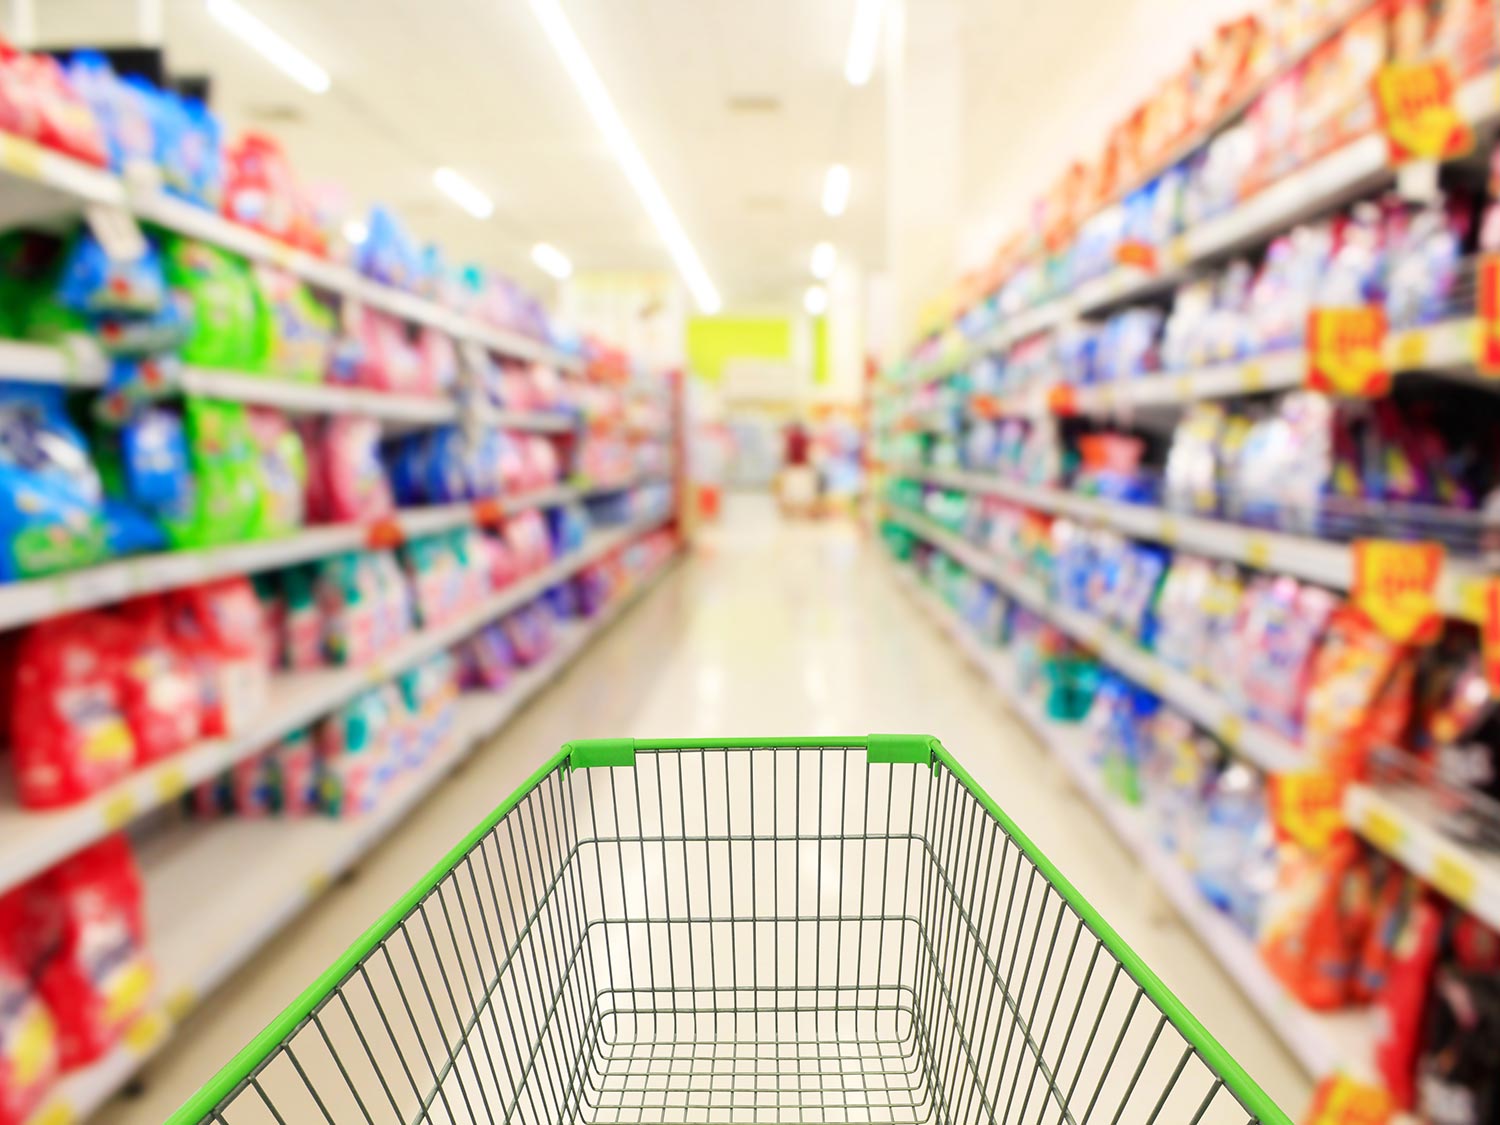 ΙΕΛΚΑ: 8 στους 10 καταναλωτές κυνηγούν τις ευκαιρίες μέσα από έξυπνες αγορές στα σούπερ μάρκετ